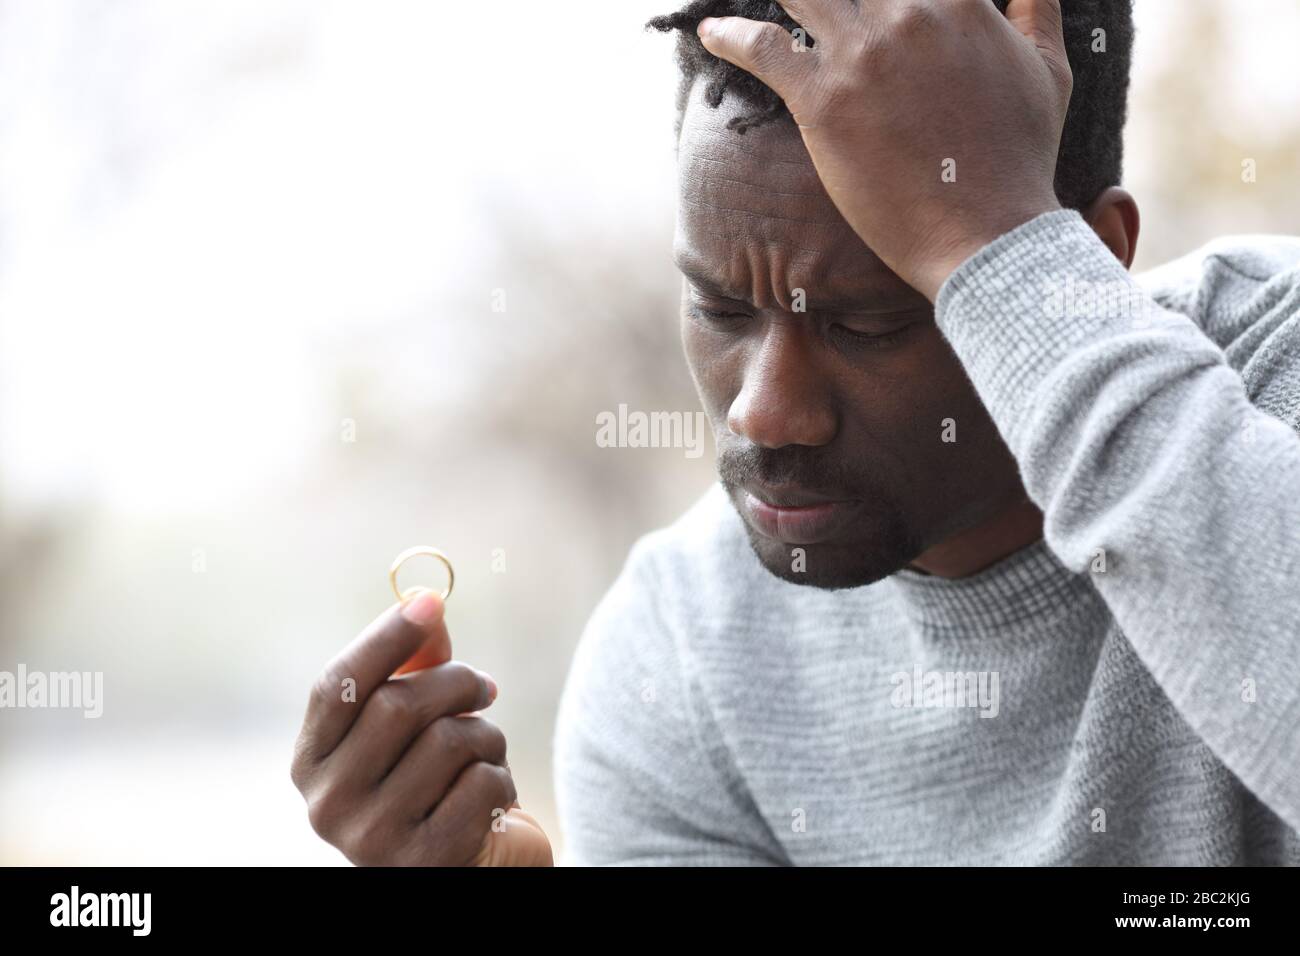 Trauriger schwarzer Mann, der sich beschwert, auf den Hochzeitsring im Freien in einem Park zu schauen Stockfoto